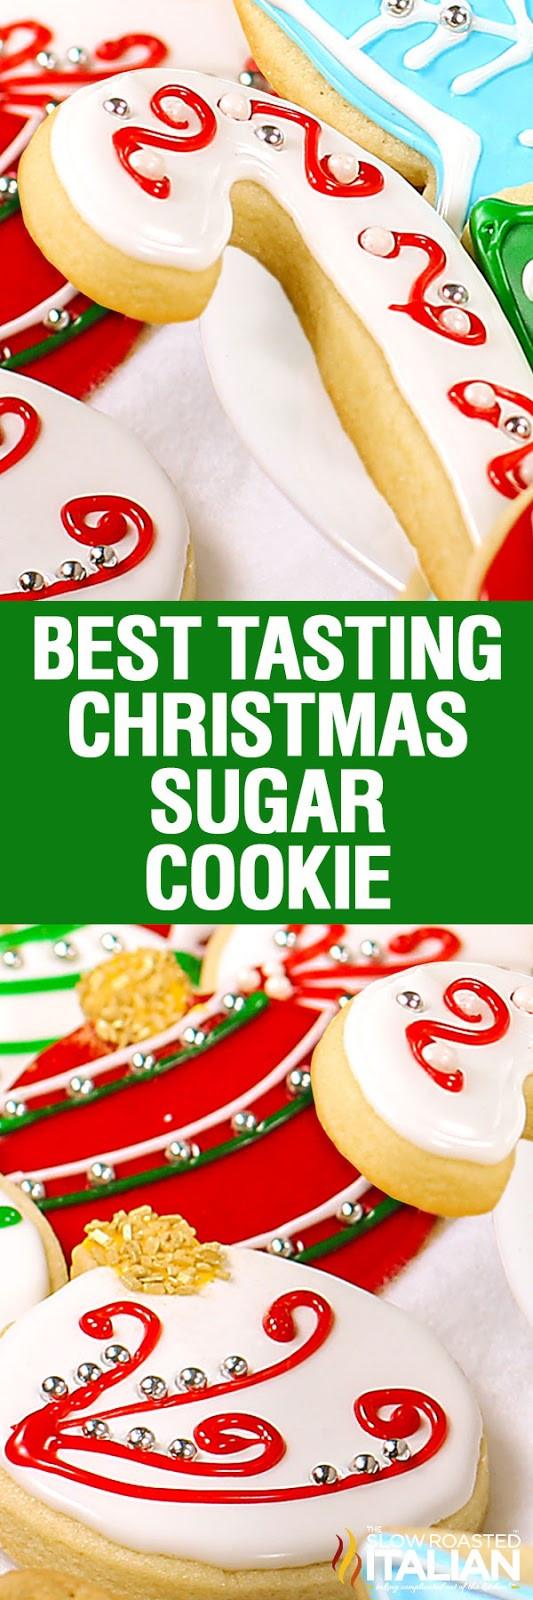 Best Christmas Sugar Cookies
 Christmas Sugar Cookies With NEW VIDEO